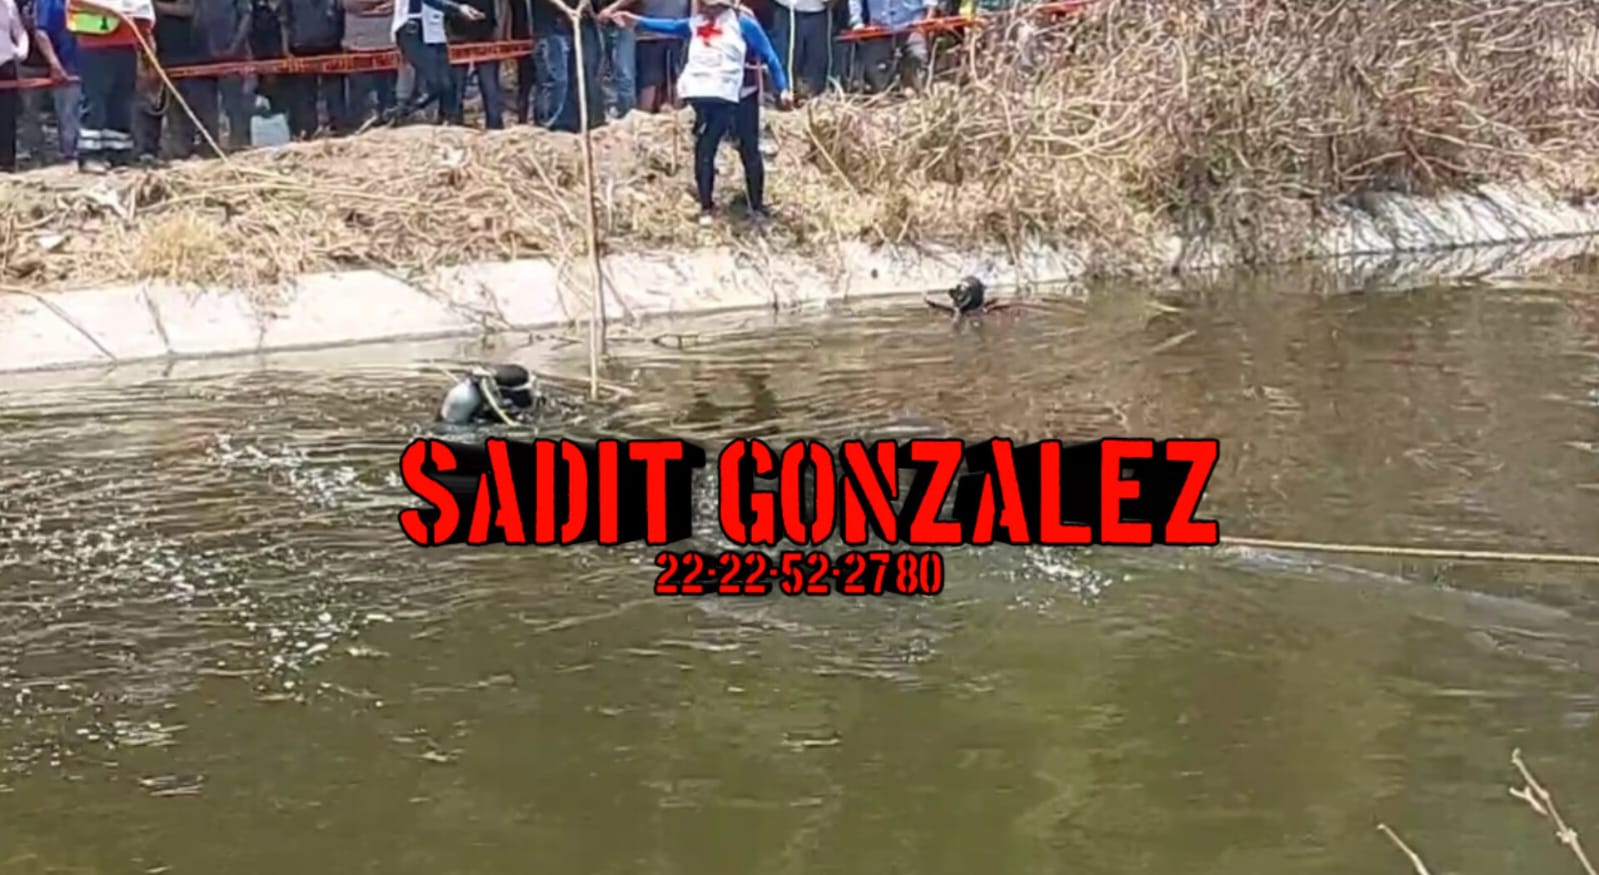 En Yehualtepec, 4 personas habrían caído al canal de aguas negras de Valsequillo